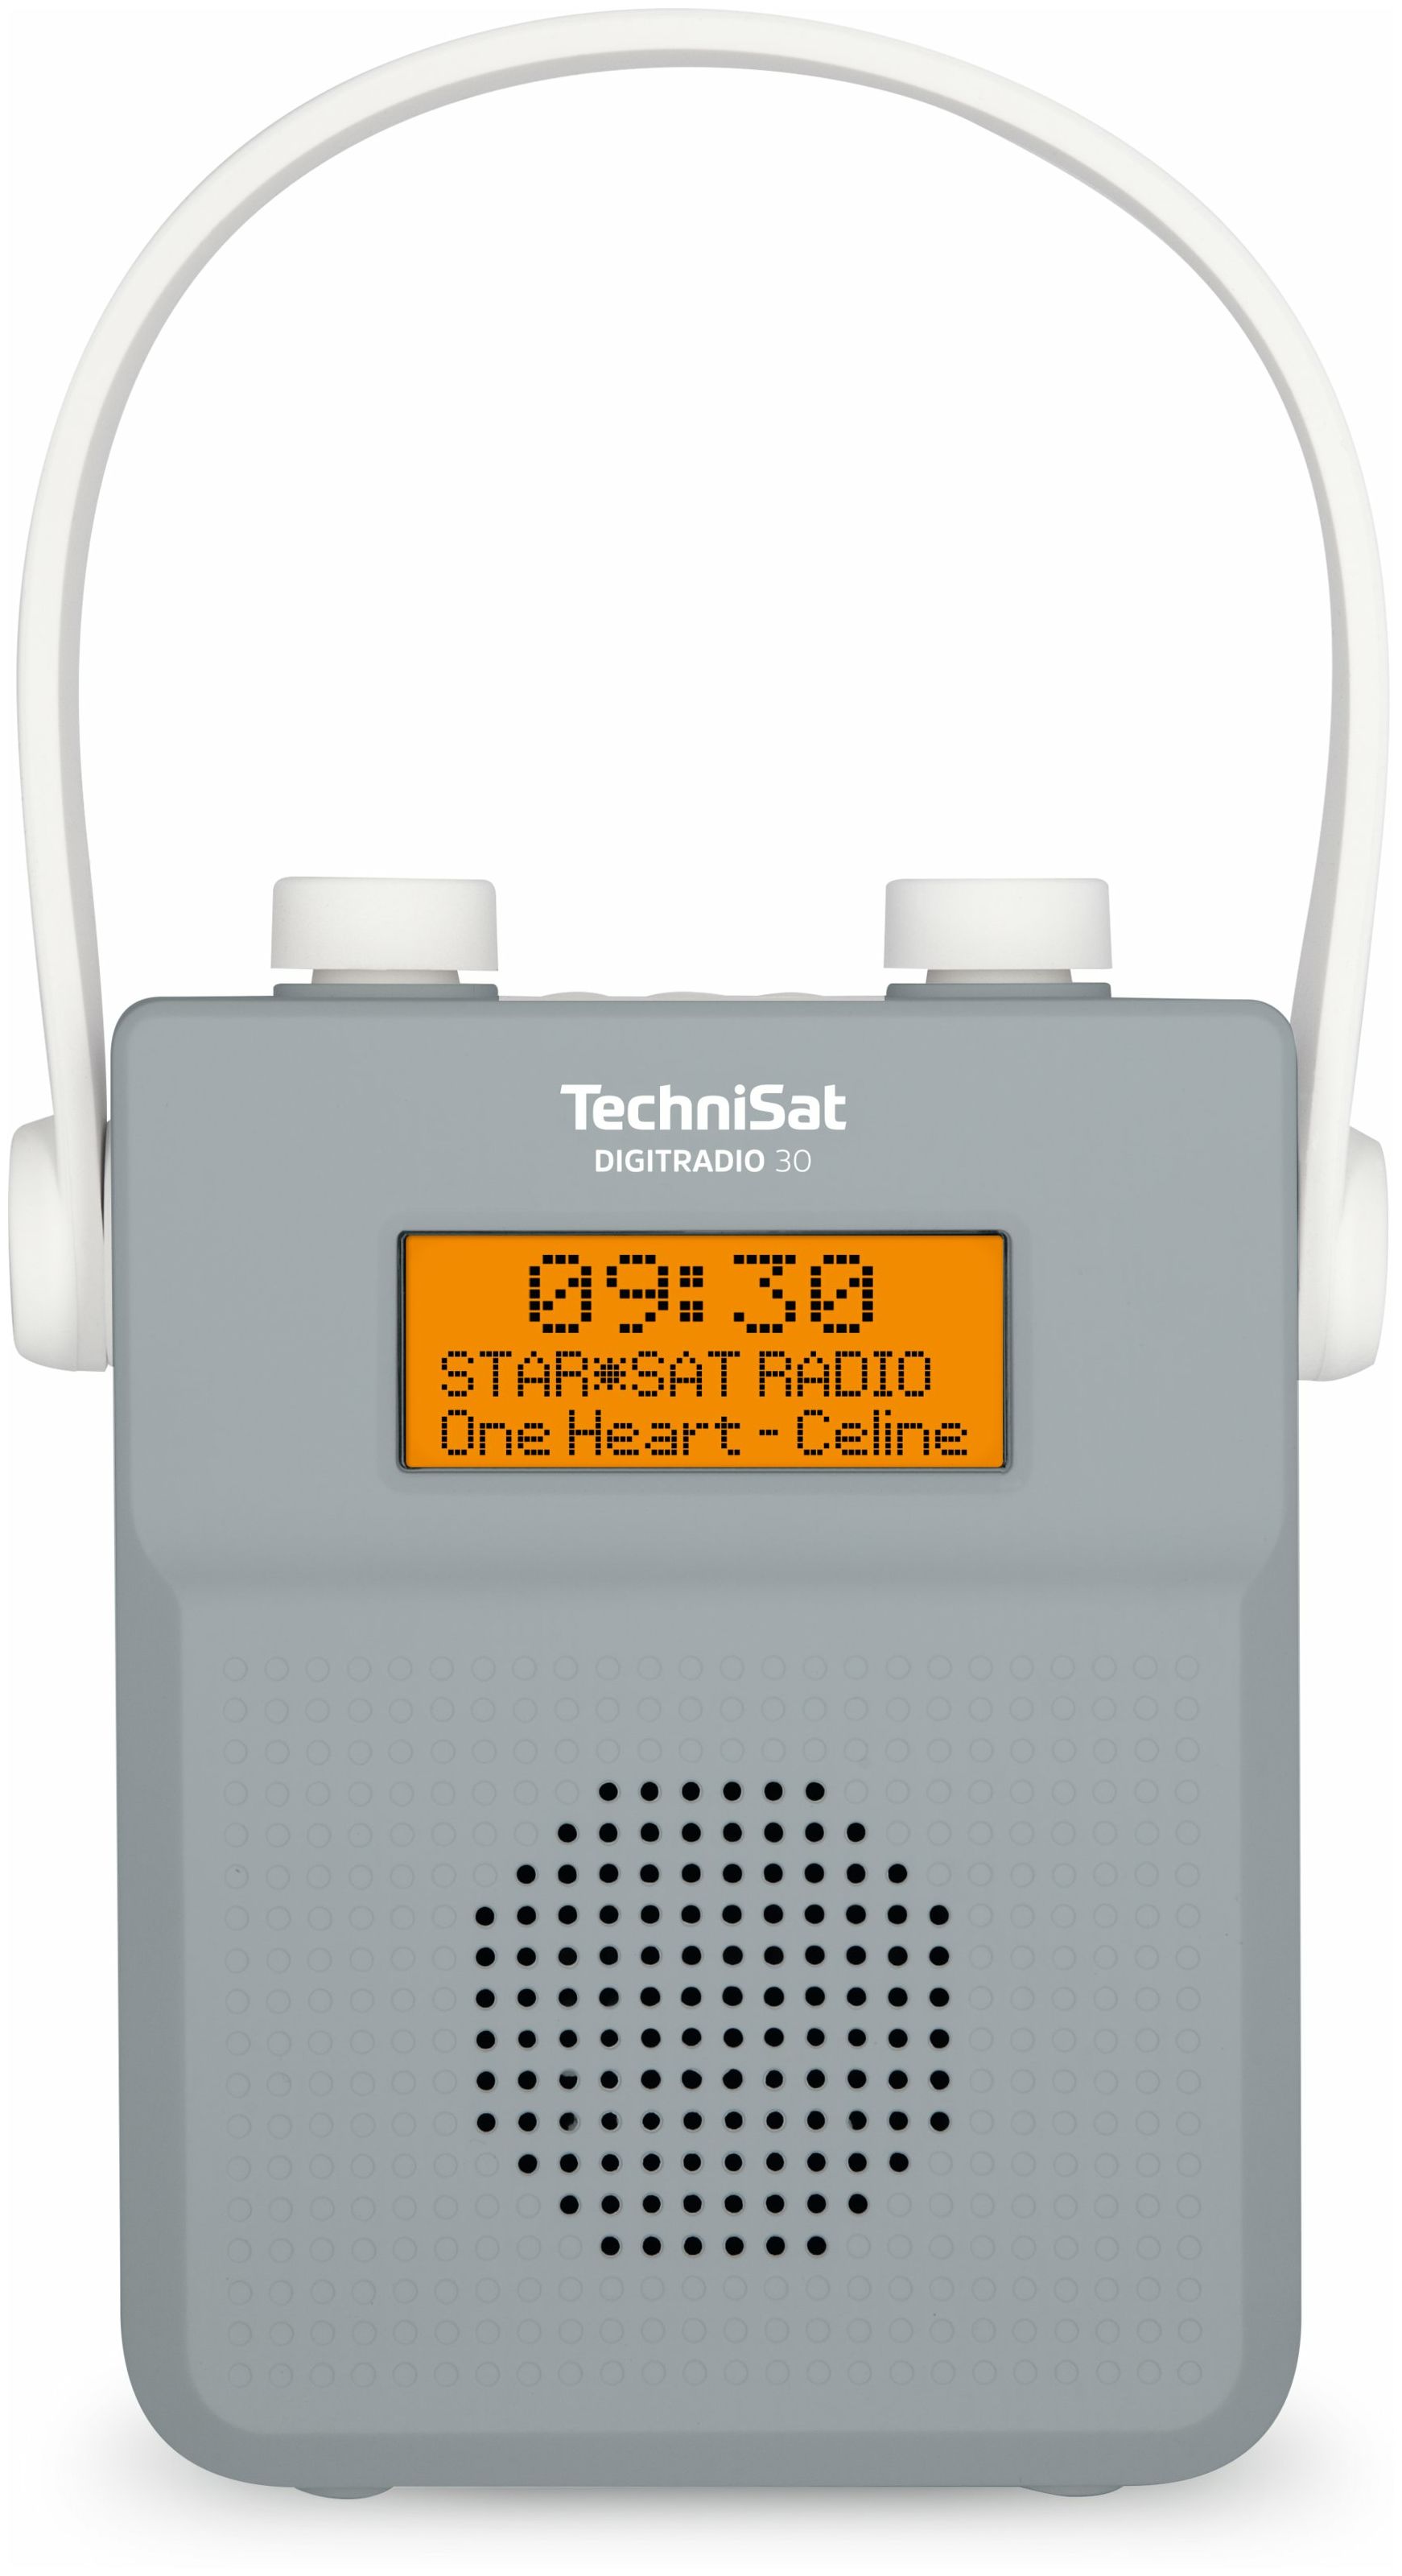 TechniSat Digitradio 30 Bluetooth DAB+, Technomarkt Radio expert IPX5 von (Grau) Tragbar FM